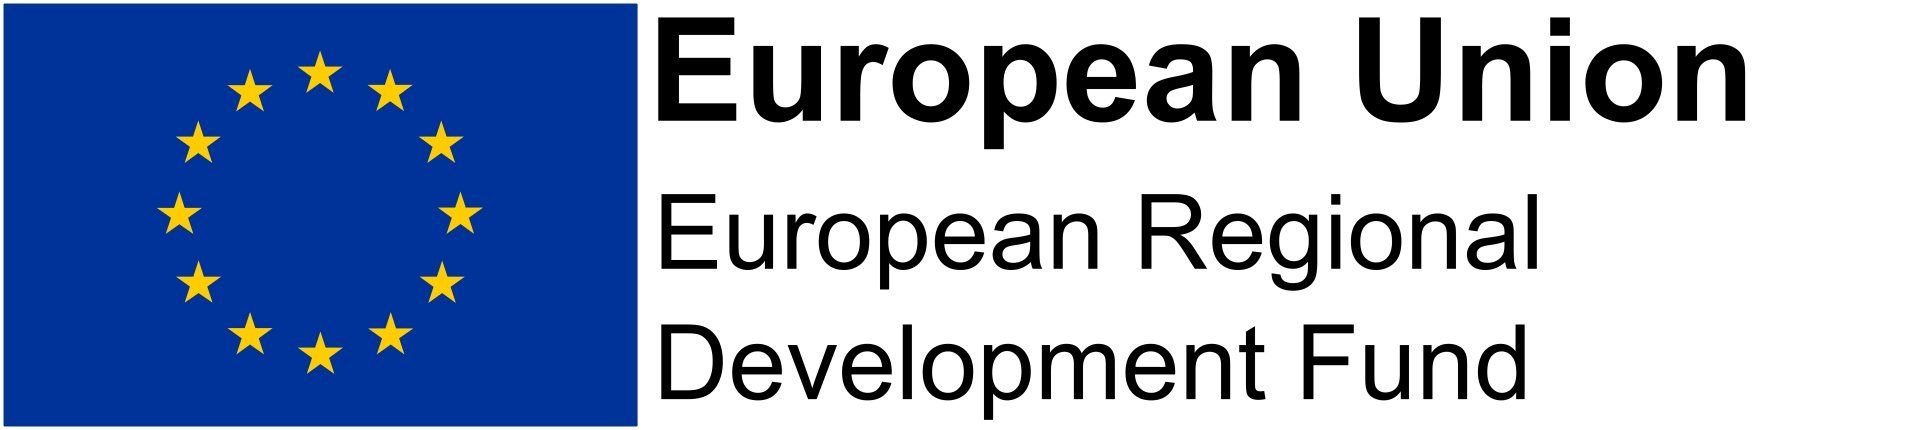 European Union ERDF